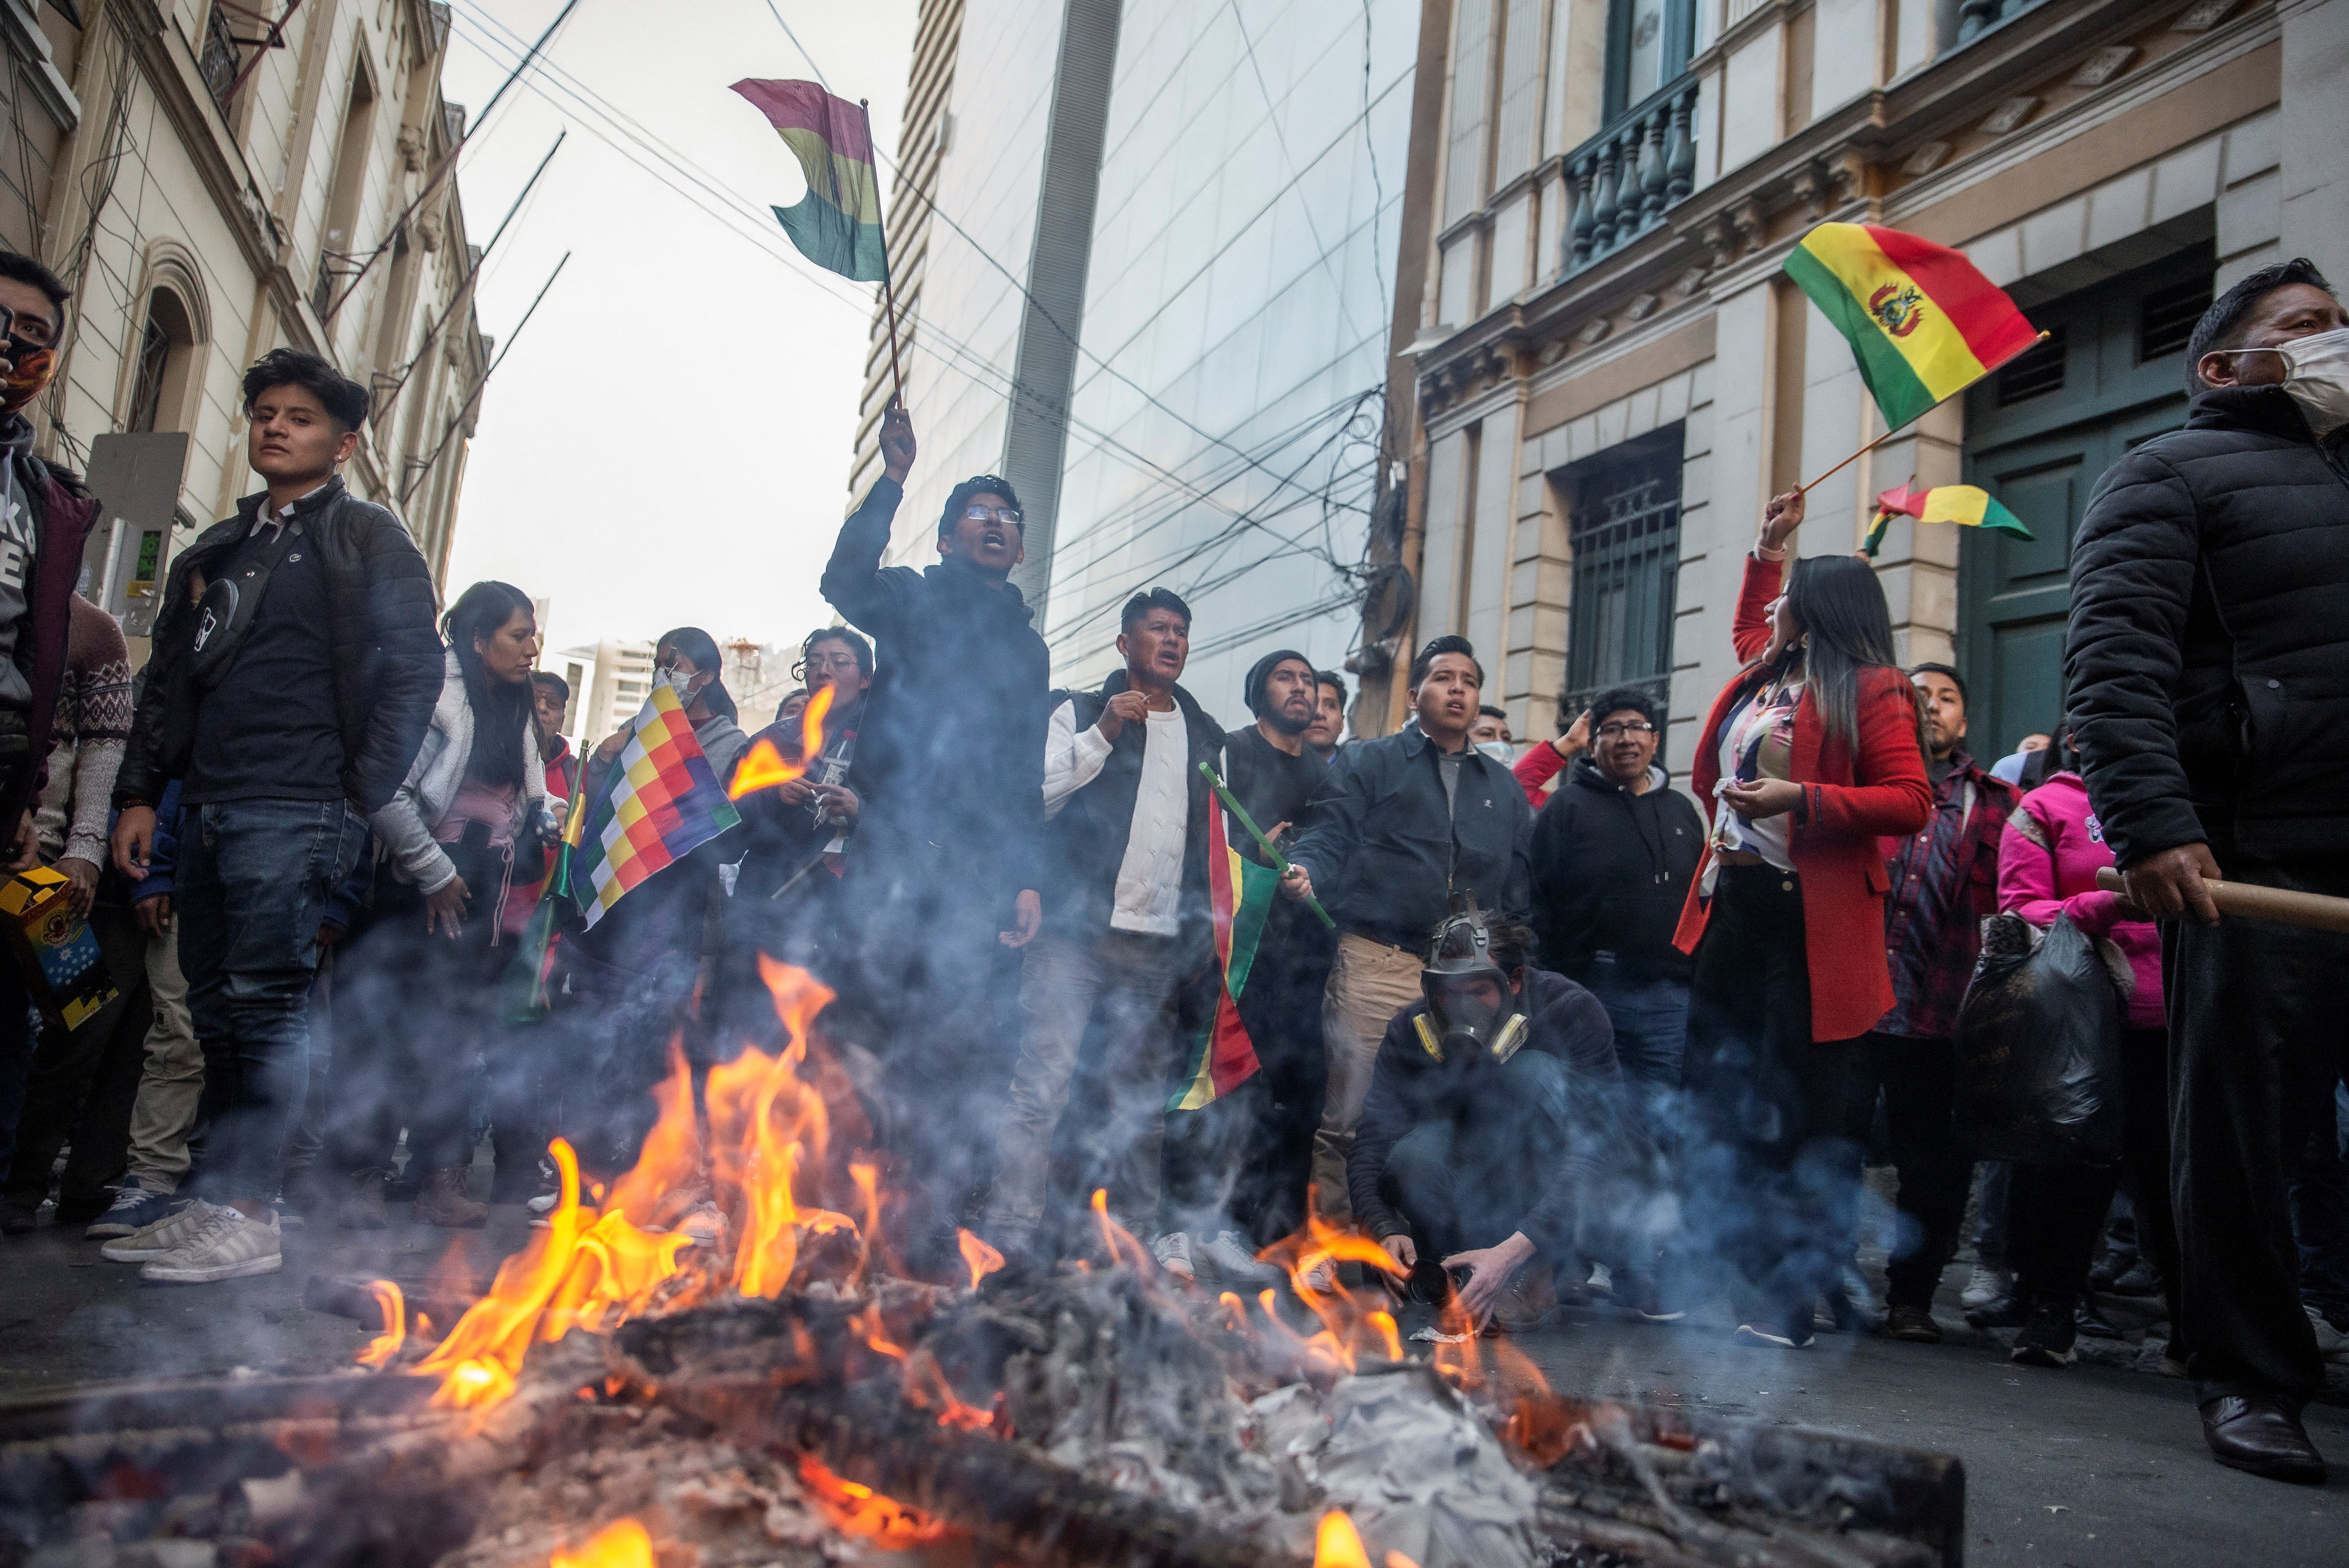 Mensen zwaaien met de nationale vlag van Bolivia en schreeuwen naar de militaire politie tijdens de poging tot staatsgreep tegen de regering van de Boliviaanse president Luis Arce door militaire eenheden.